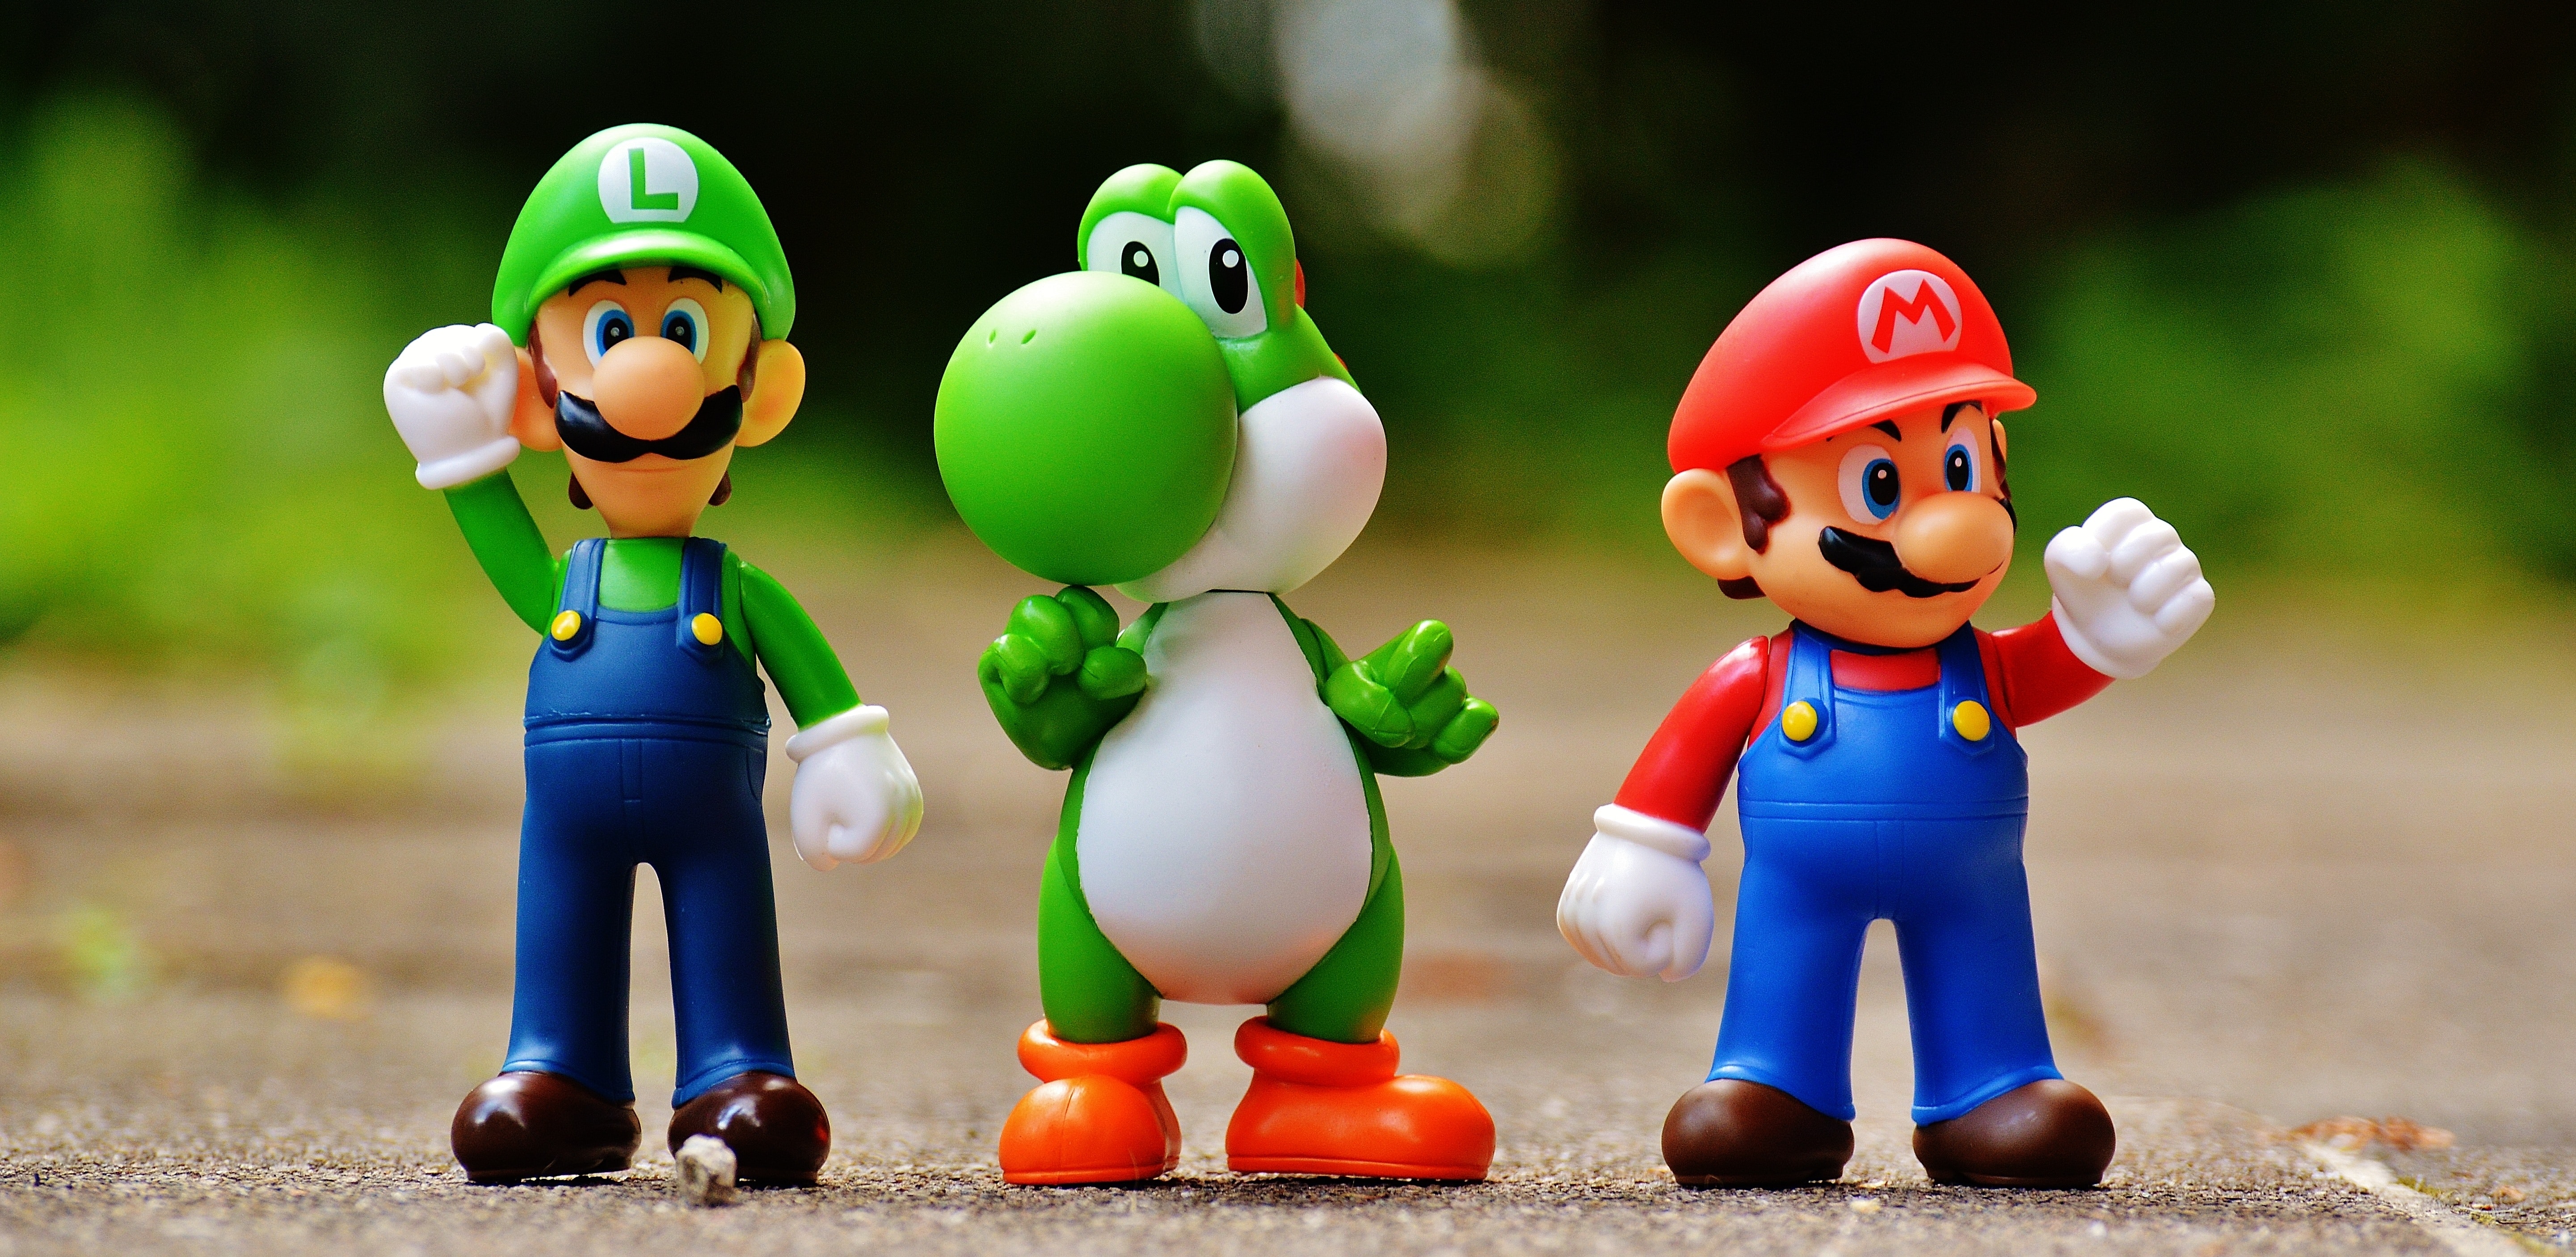 Luigi, Yoshi, and Mario